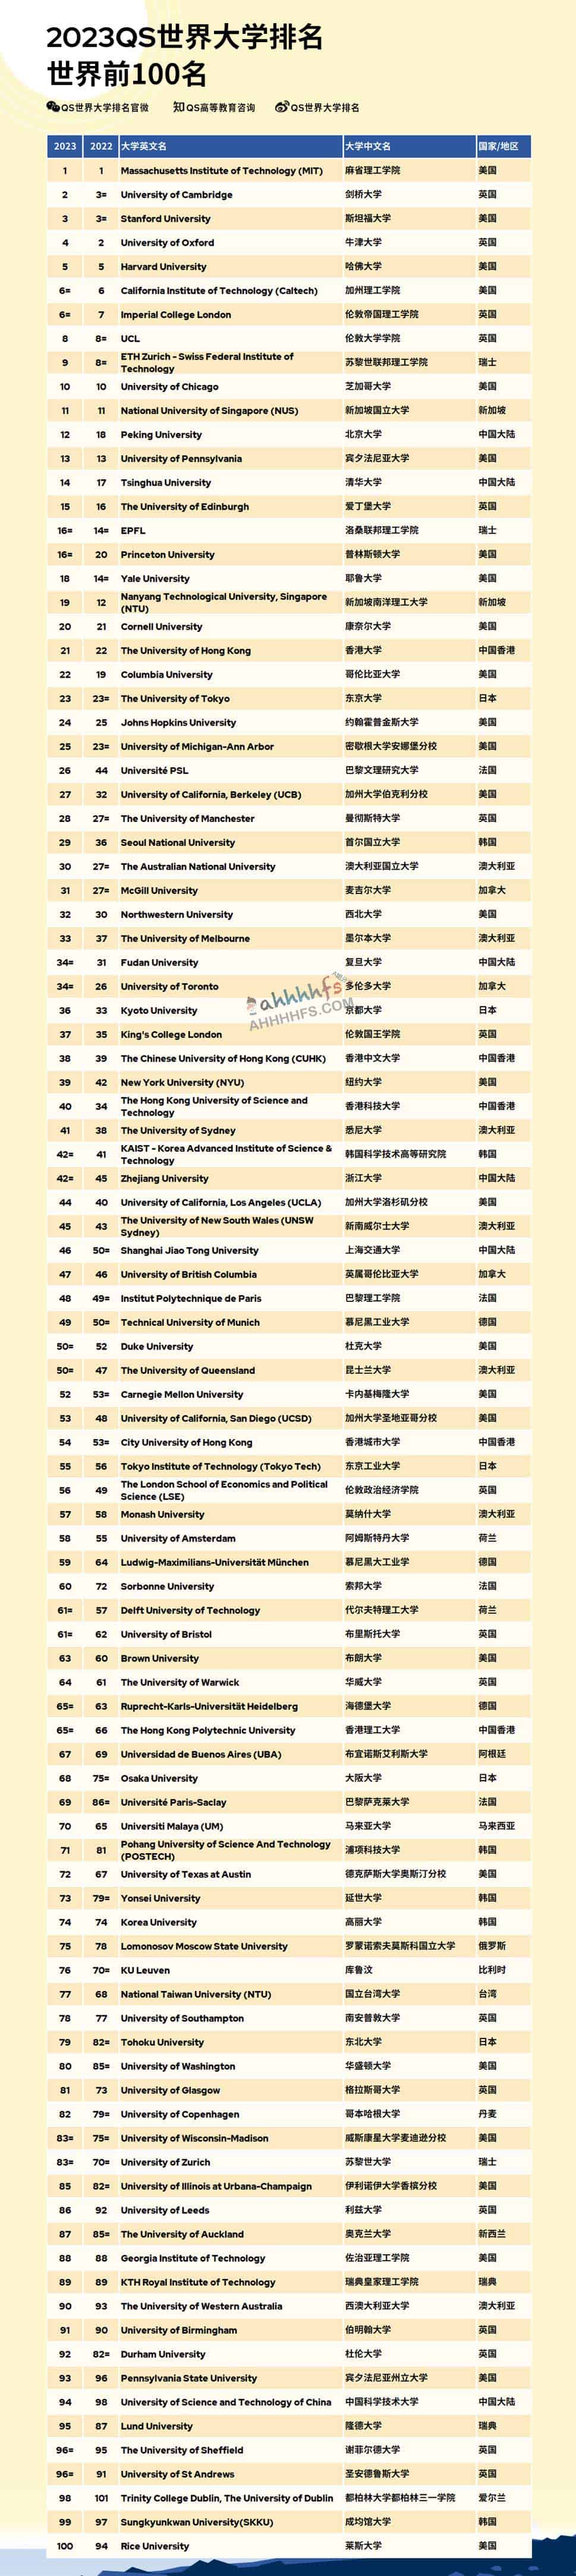 2023QS世界大学排名 前100完整榜单